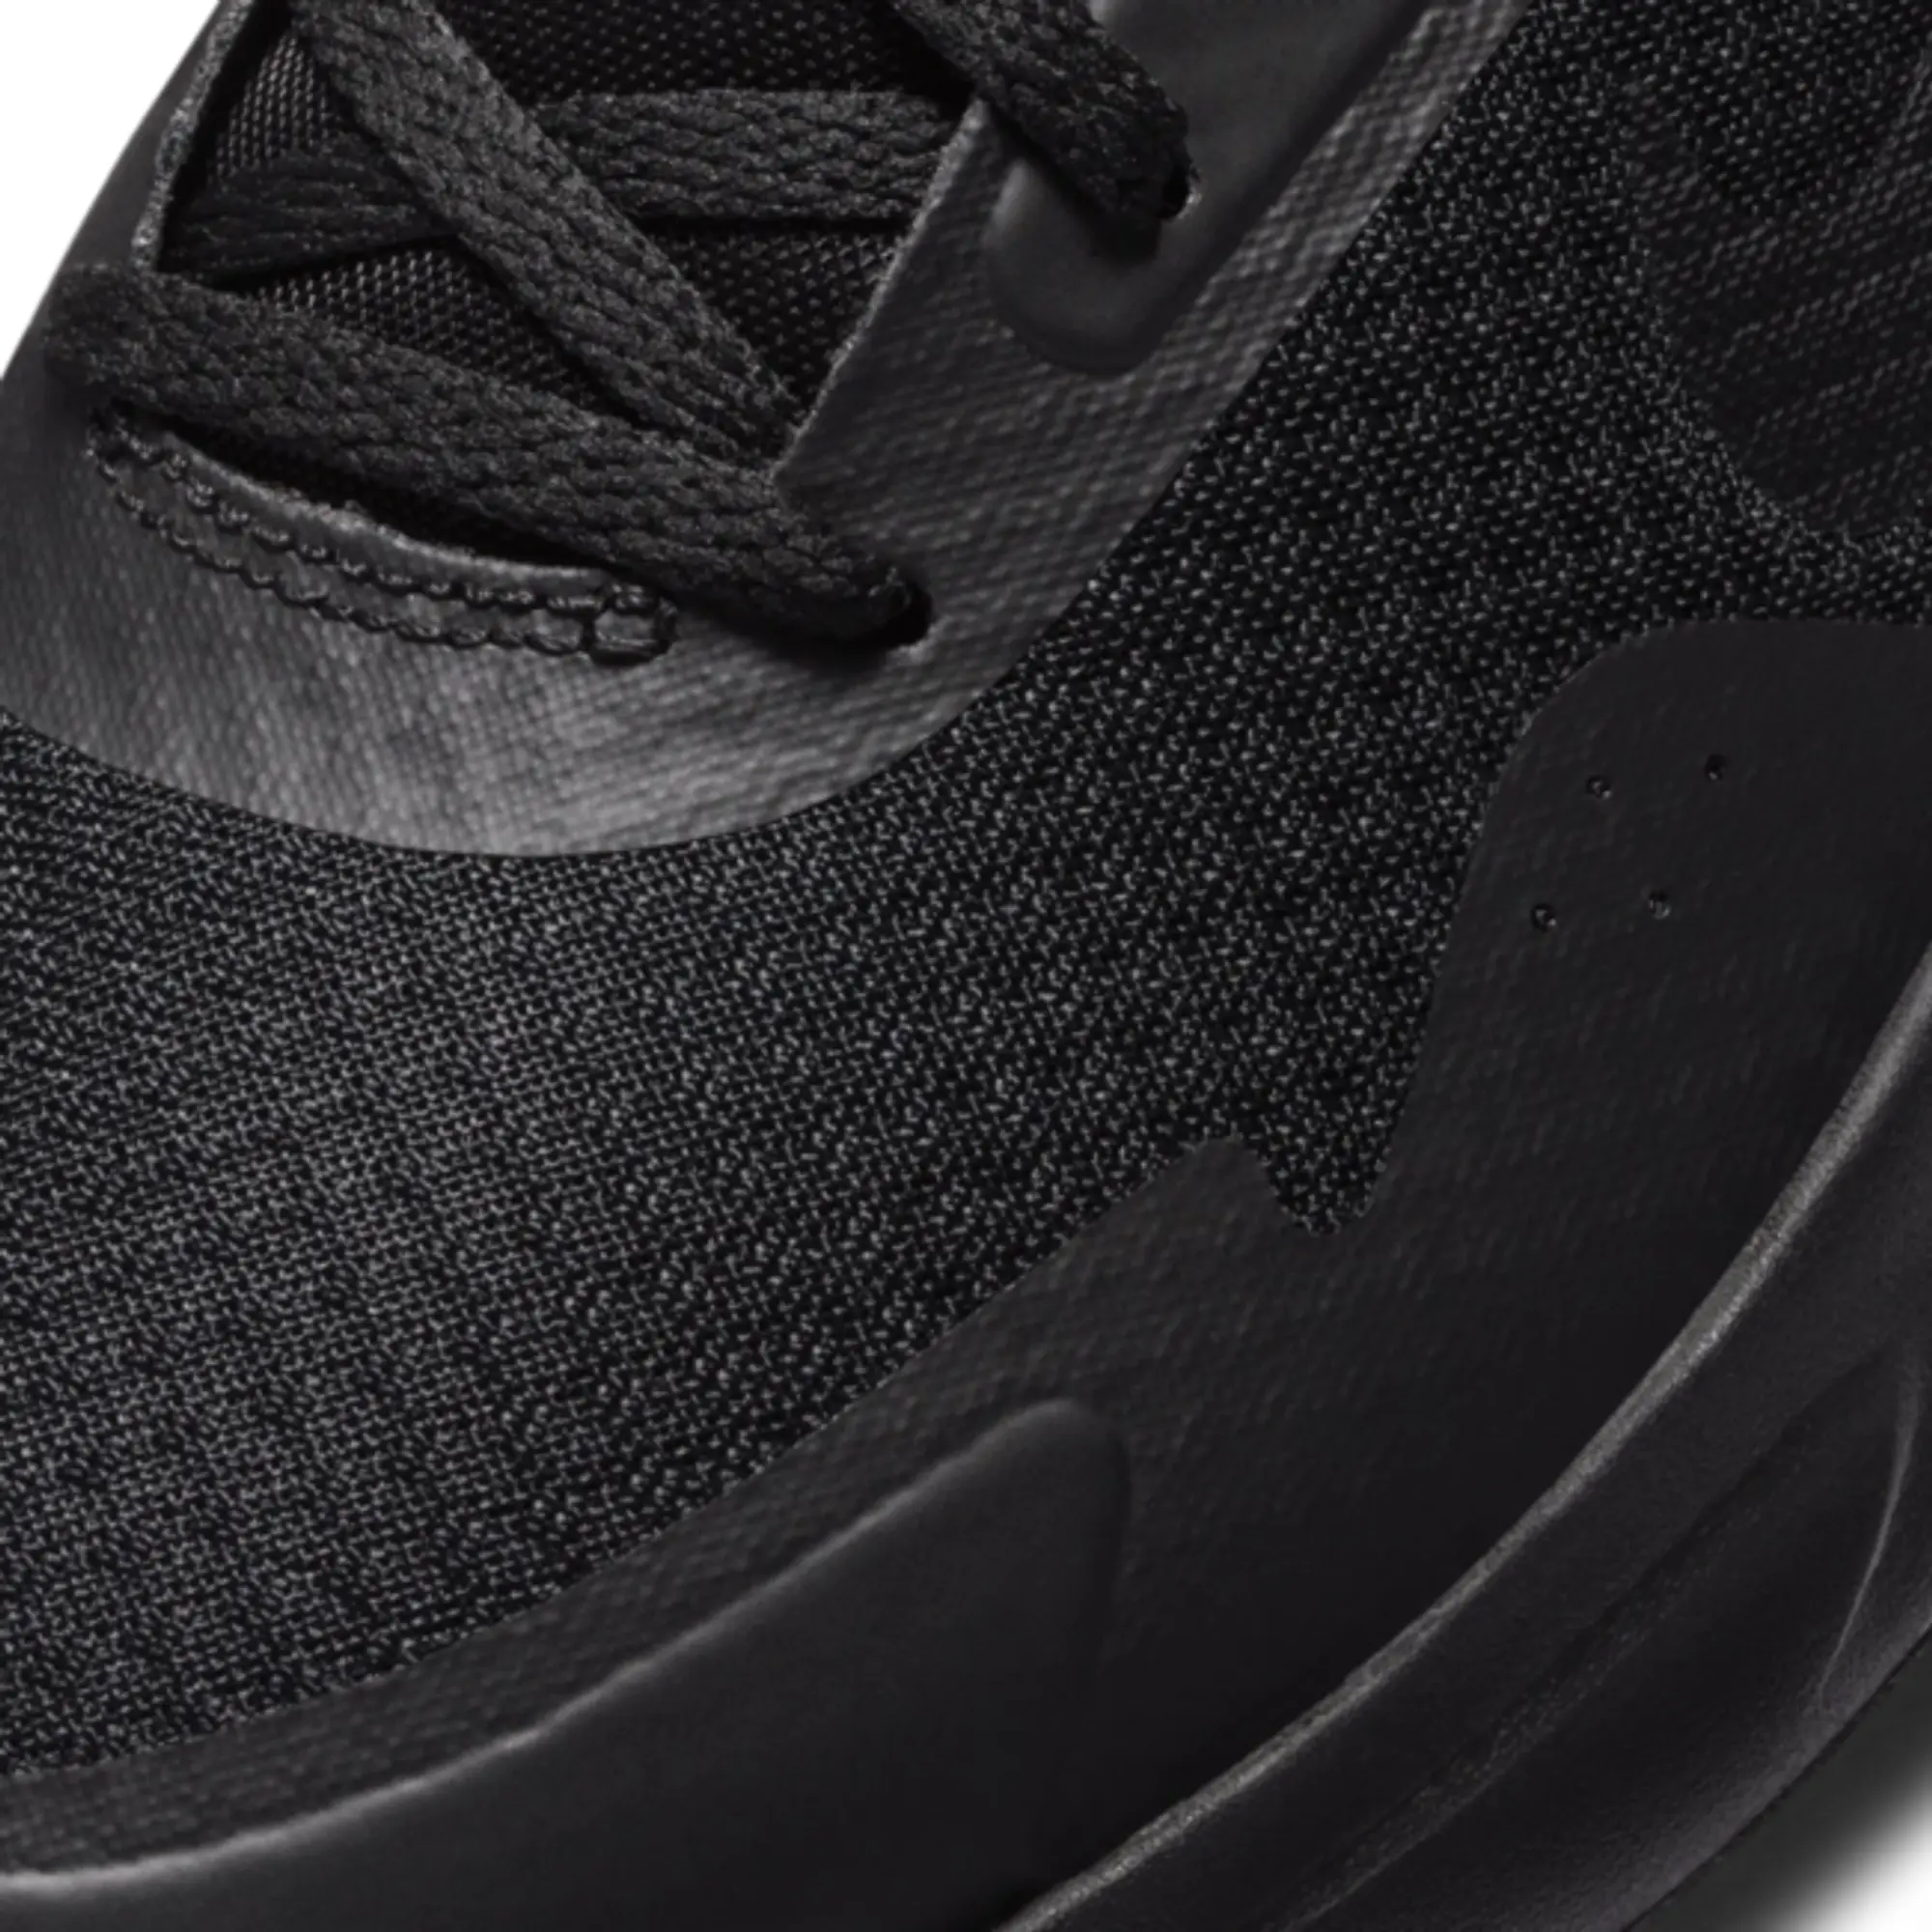 Nike Wearallday Men's Shoe - Black